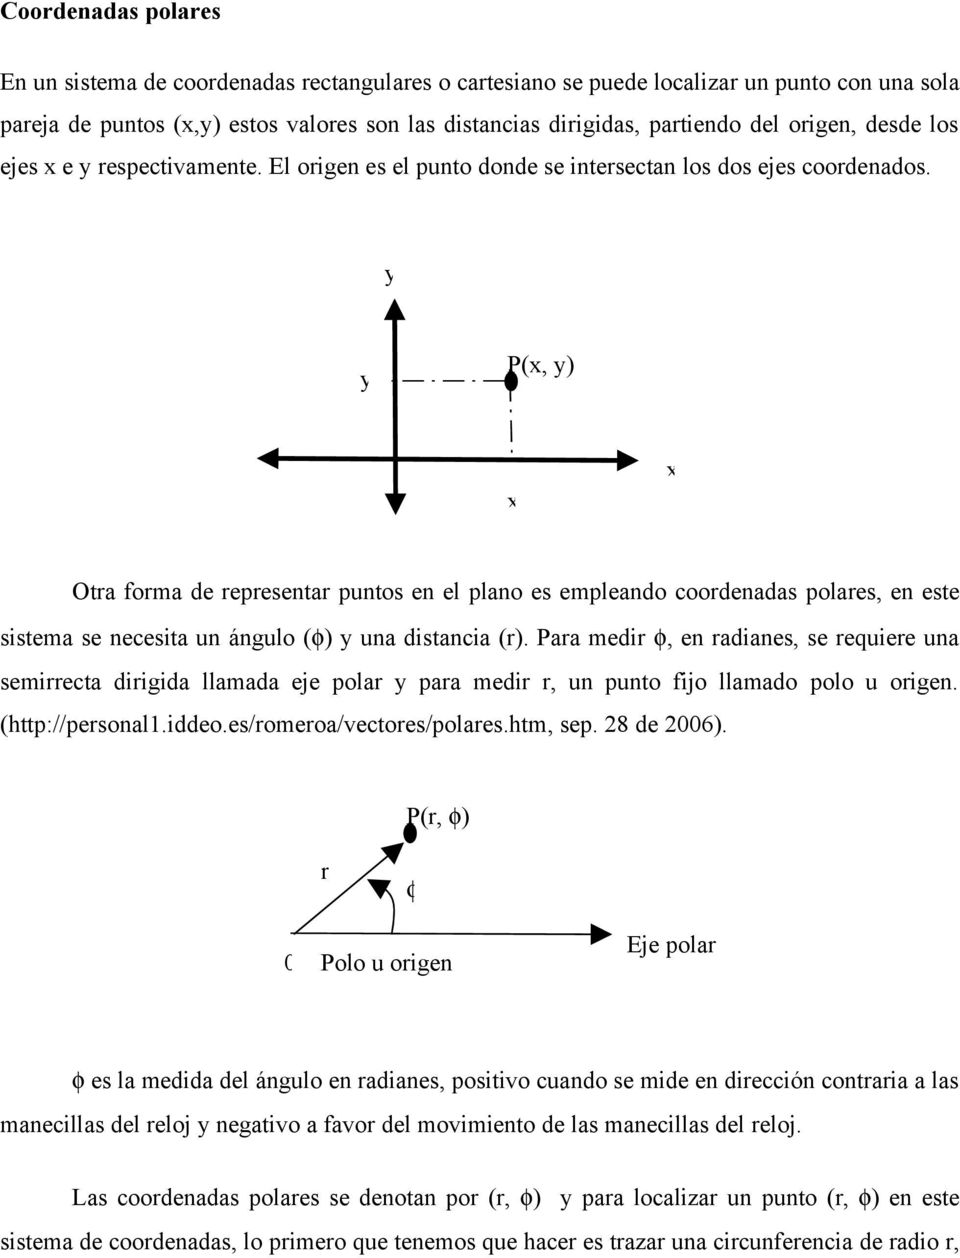 P(, ) Ota foma de epesenta puntos en el plano es empleando coodenadas polaes, en este sistema se necesita un ángulo () una distancia ().